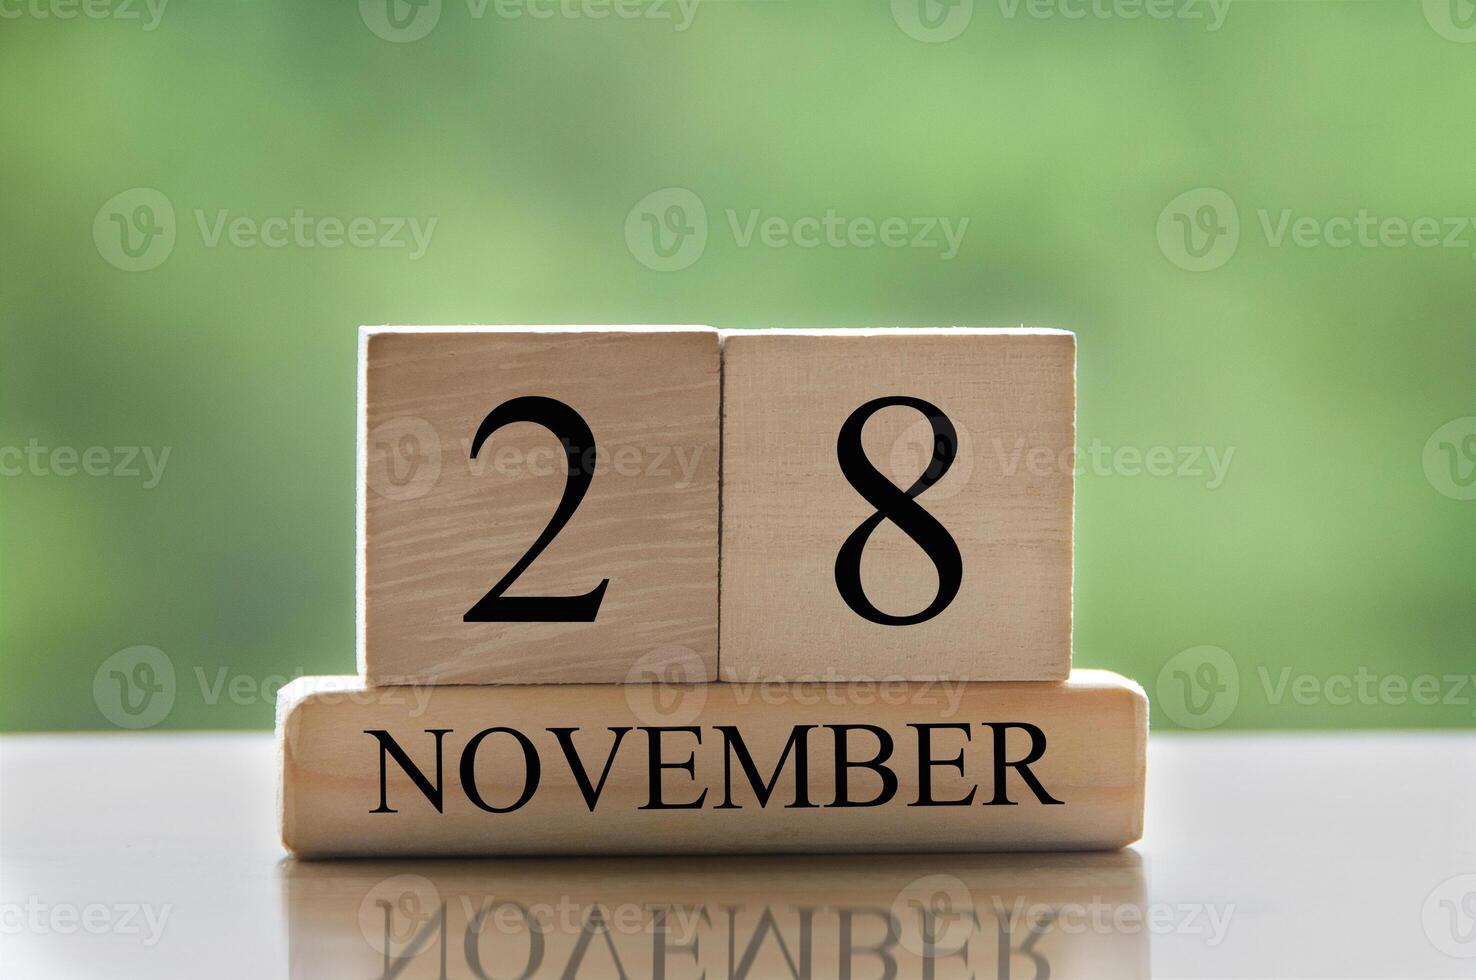 28 november kalenderdatum text på träblock med kopia utrymme för idéer eller text. kopieringsutrymme foto